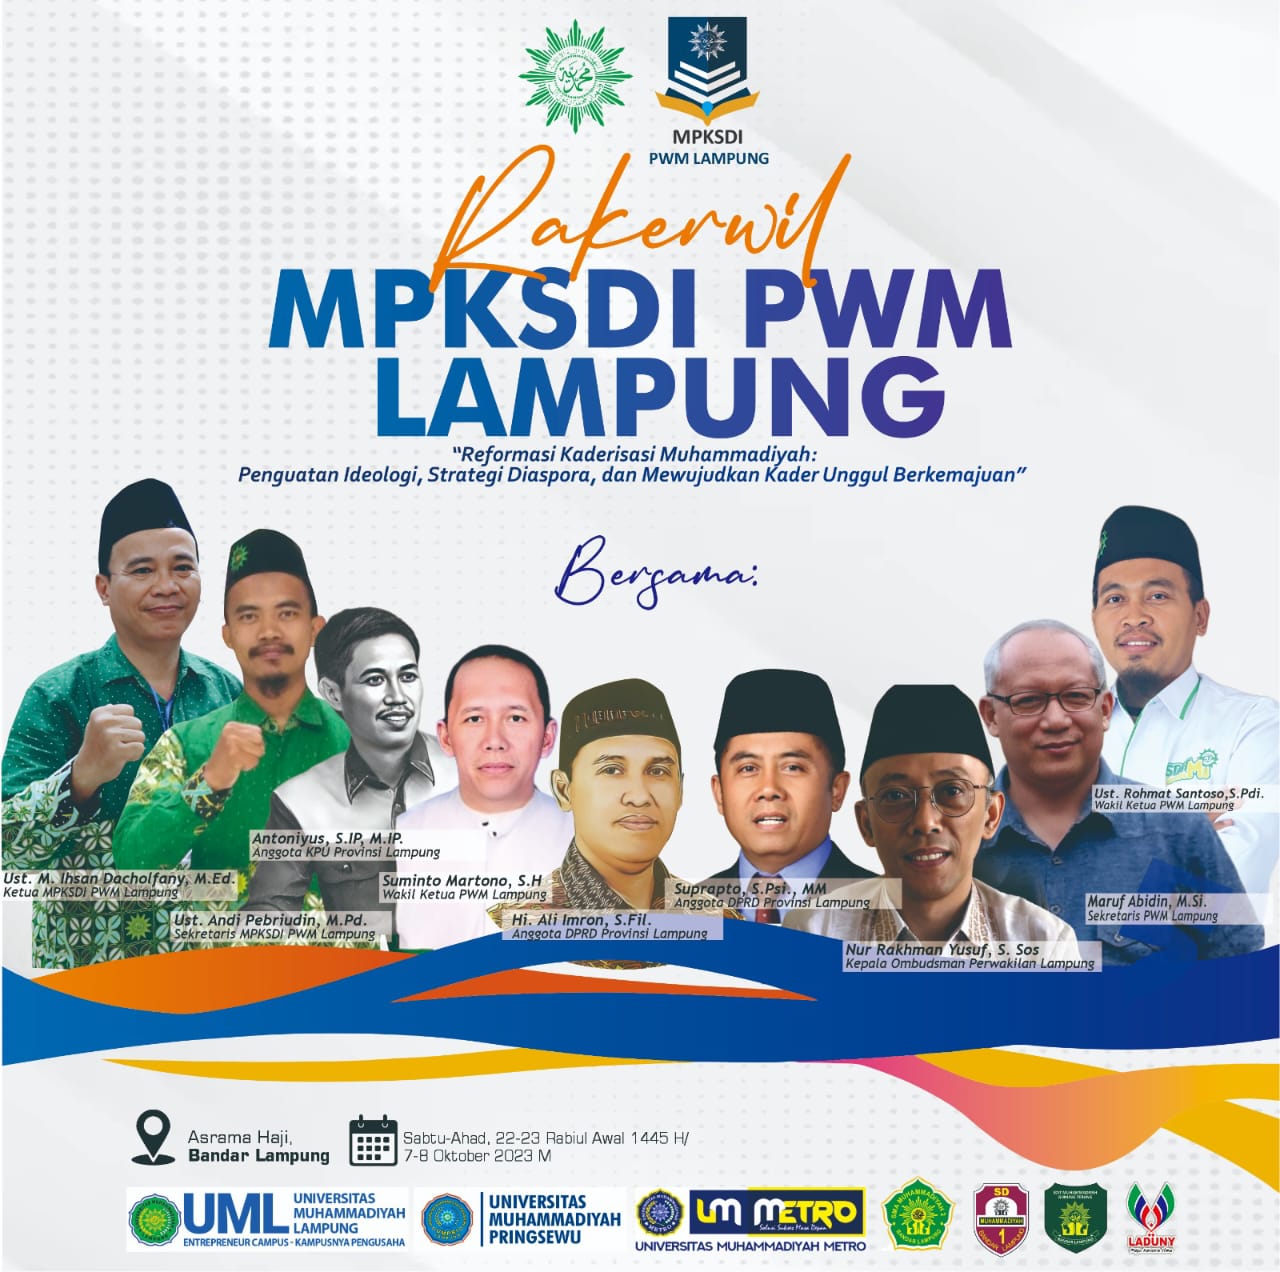 Semarak Rakerwil MPKSDI PWM Lampung